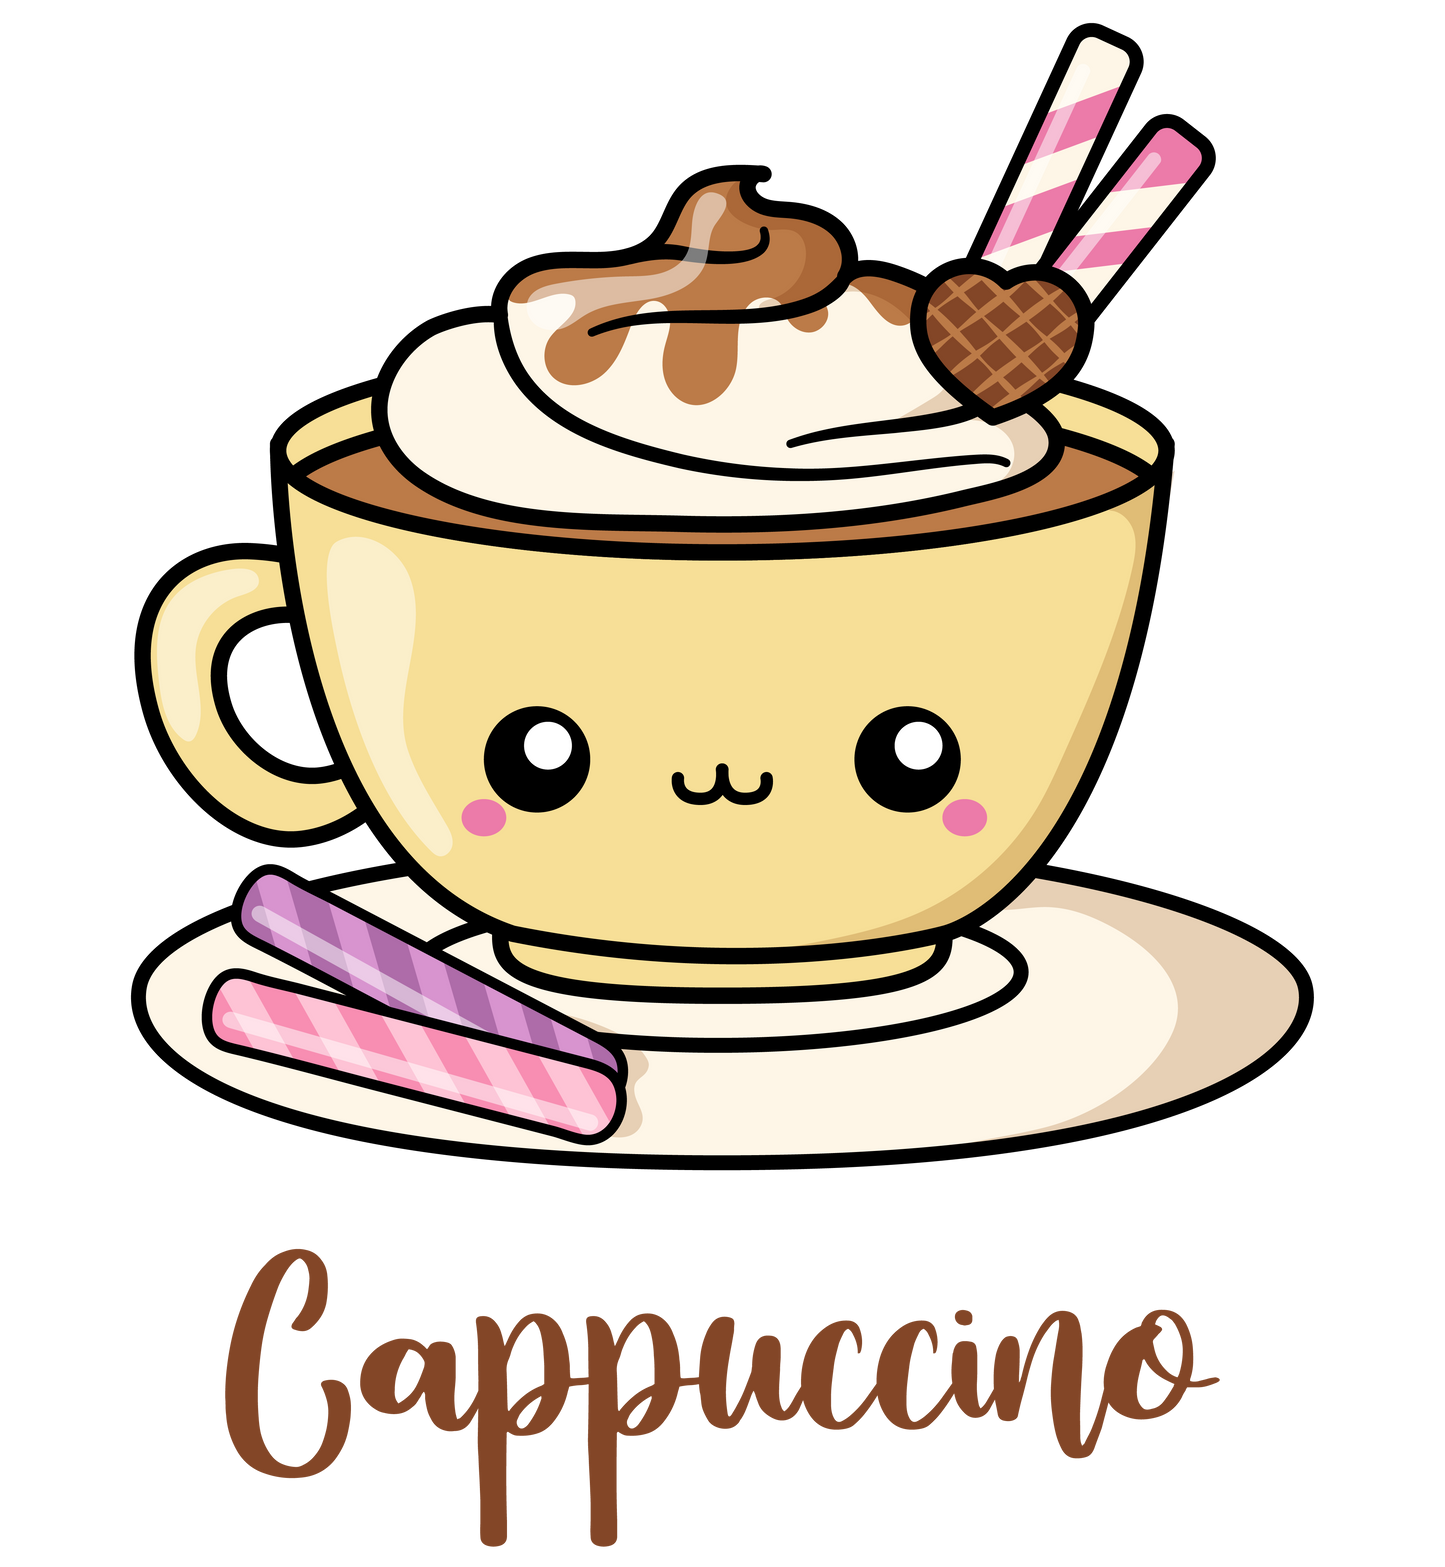 Premium Cappuccino Coffee Sticker